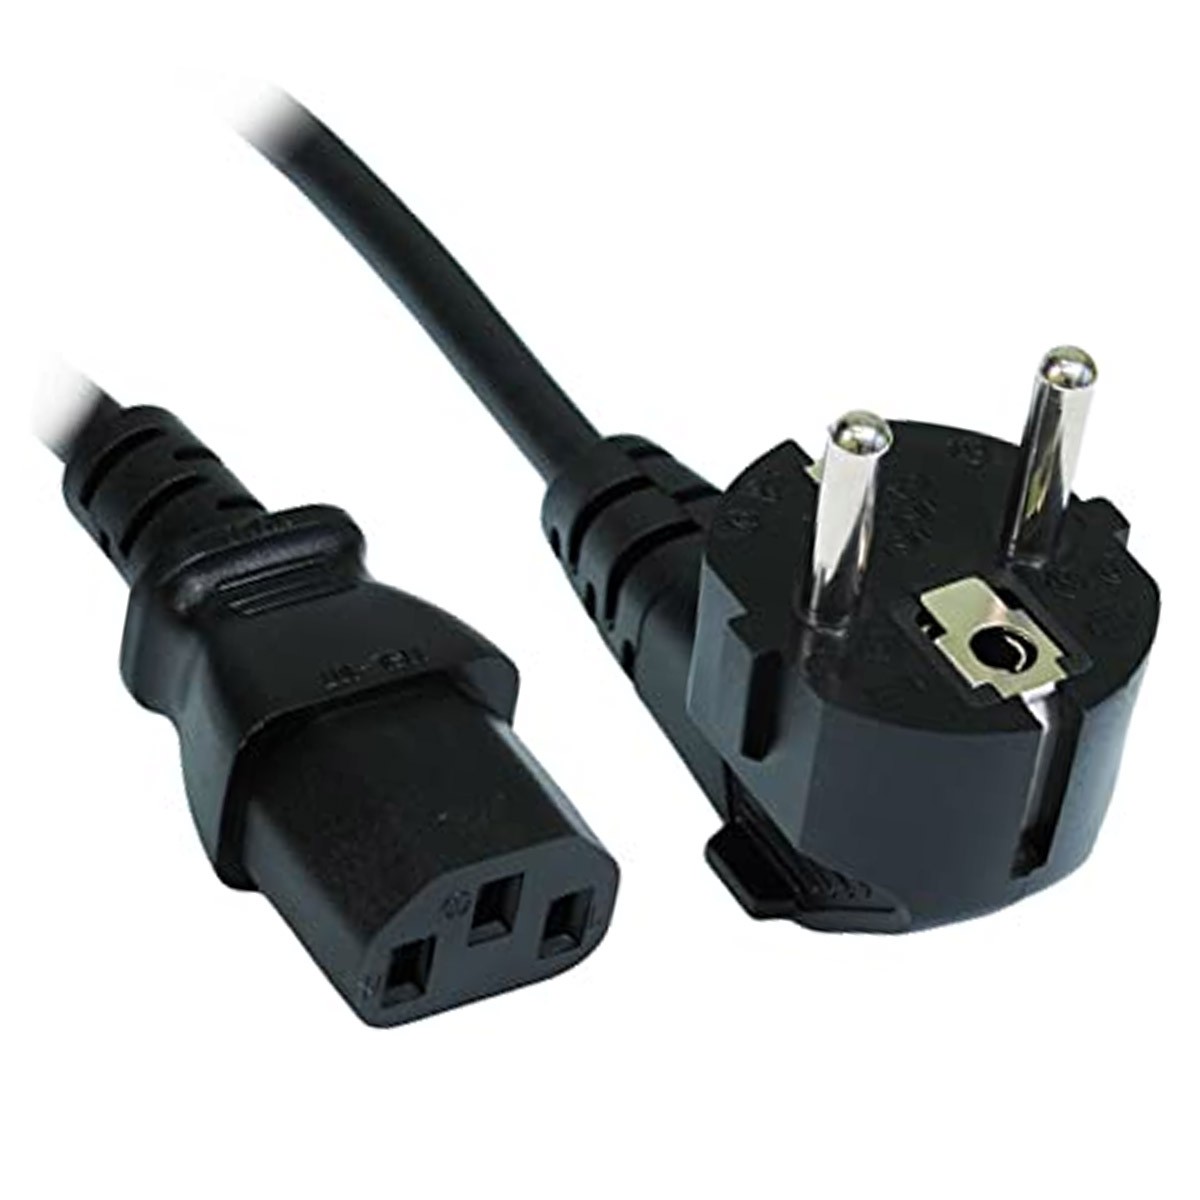 Câble Alimentation 220V IEC (C14 / C13) - Connectique PC